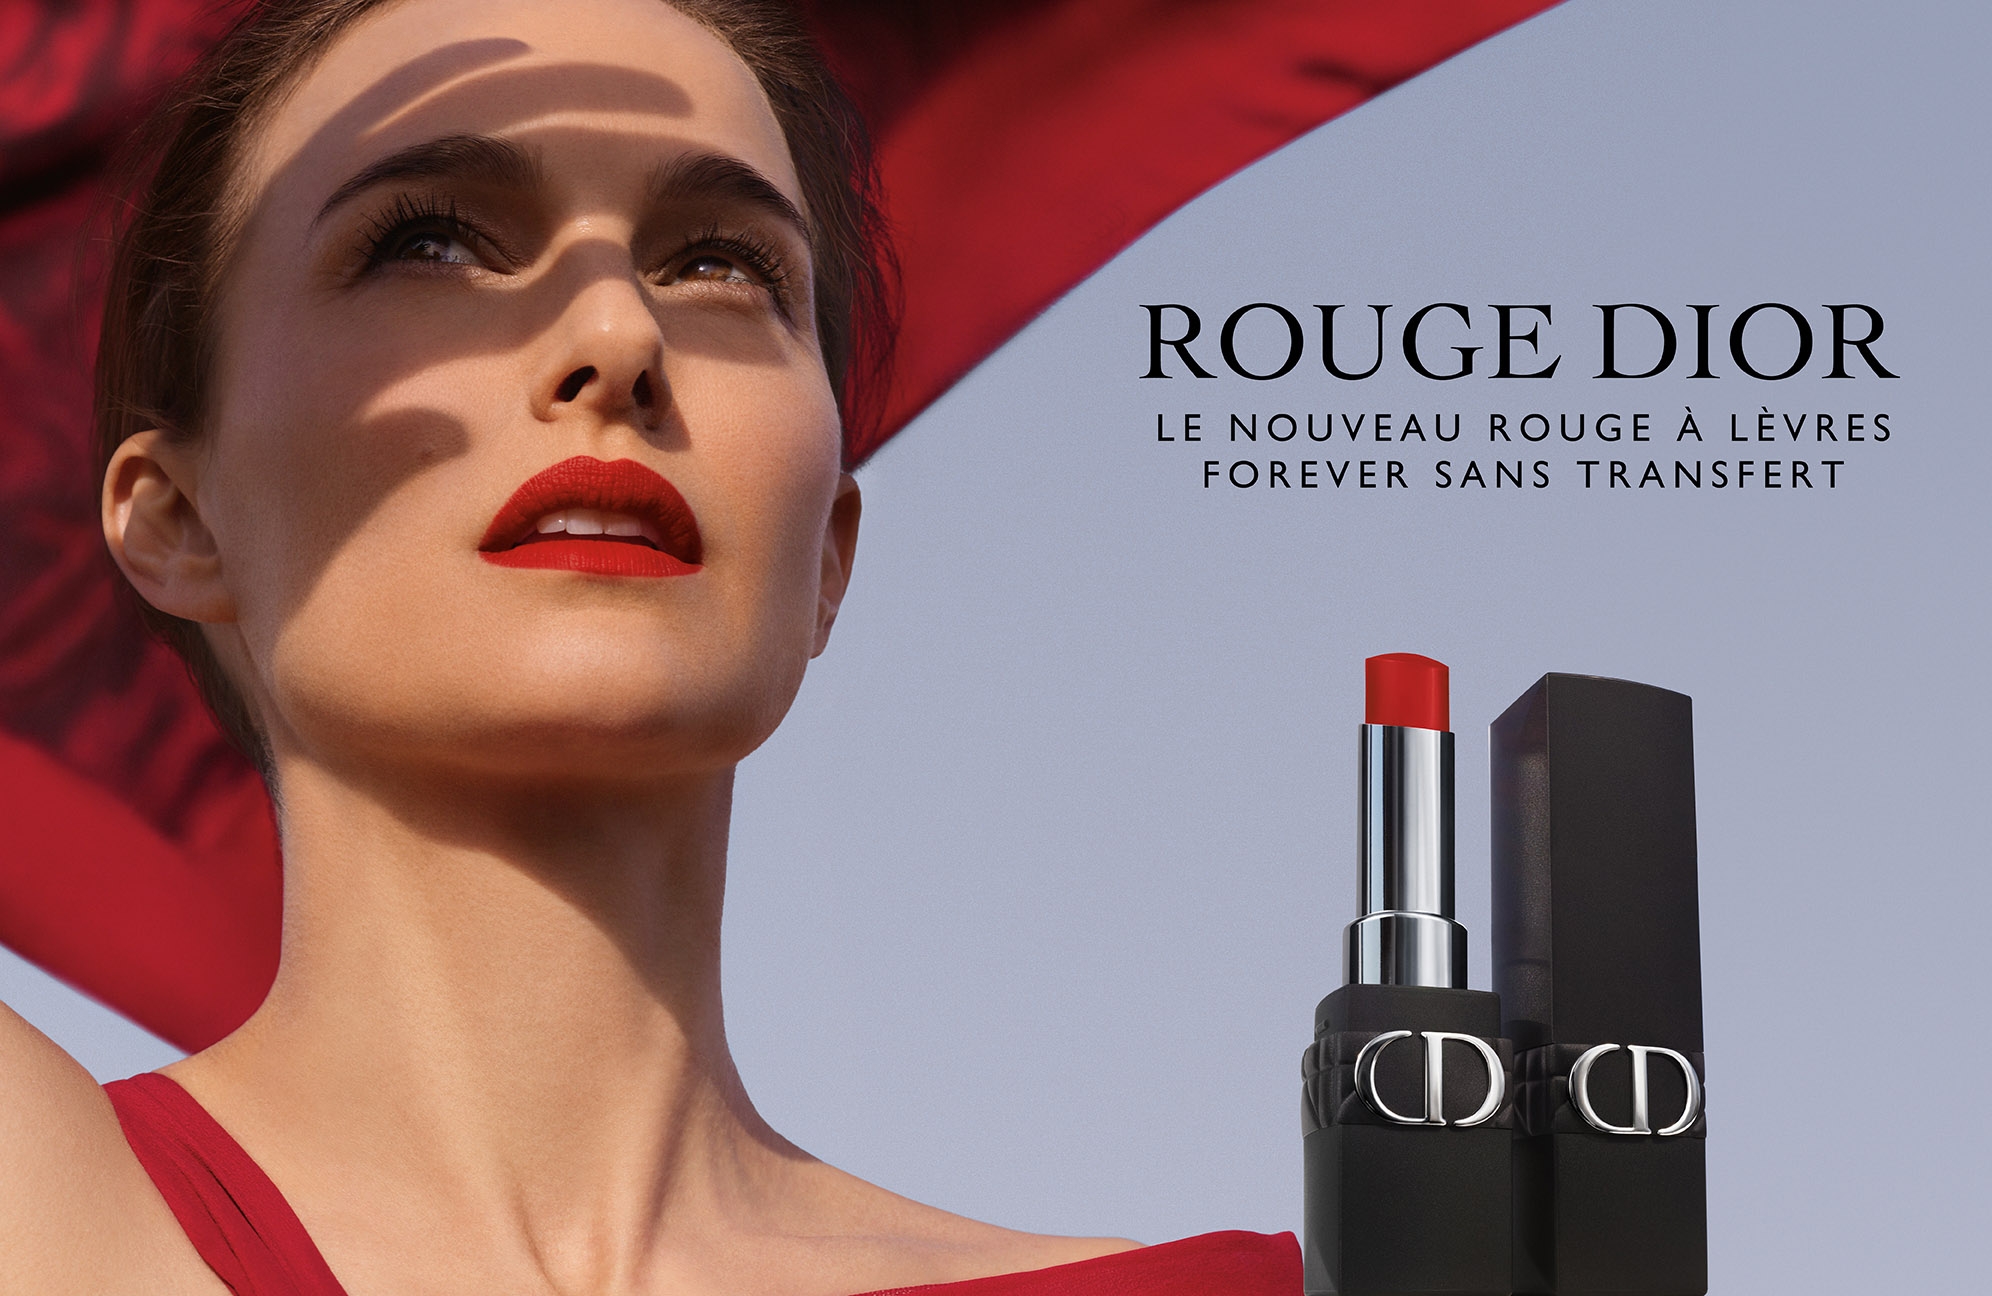 Christian Dior - LVMH Parfums - Vila Olímpia - 1 dica de 15 clientes